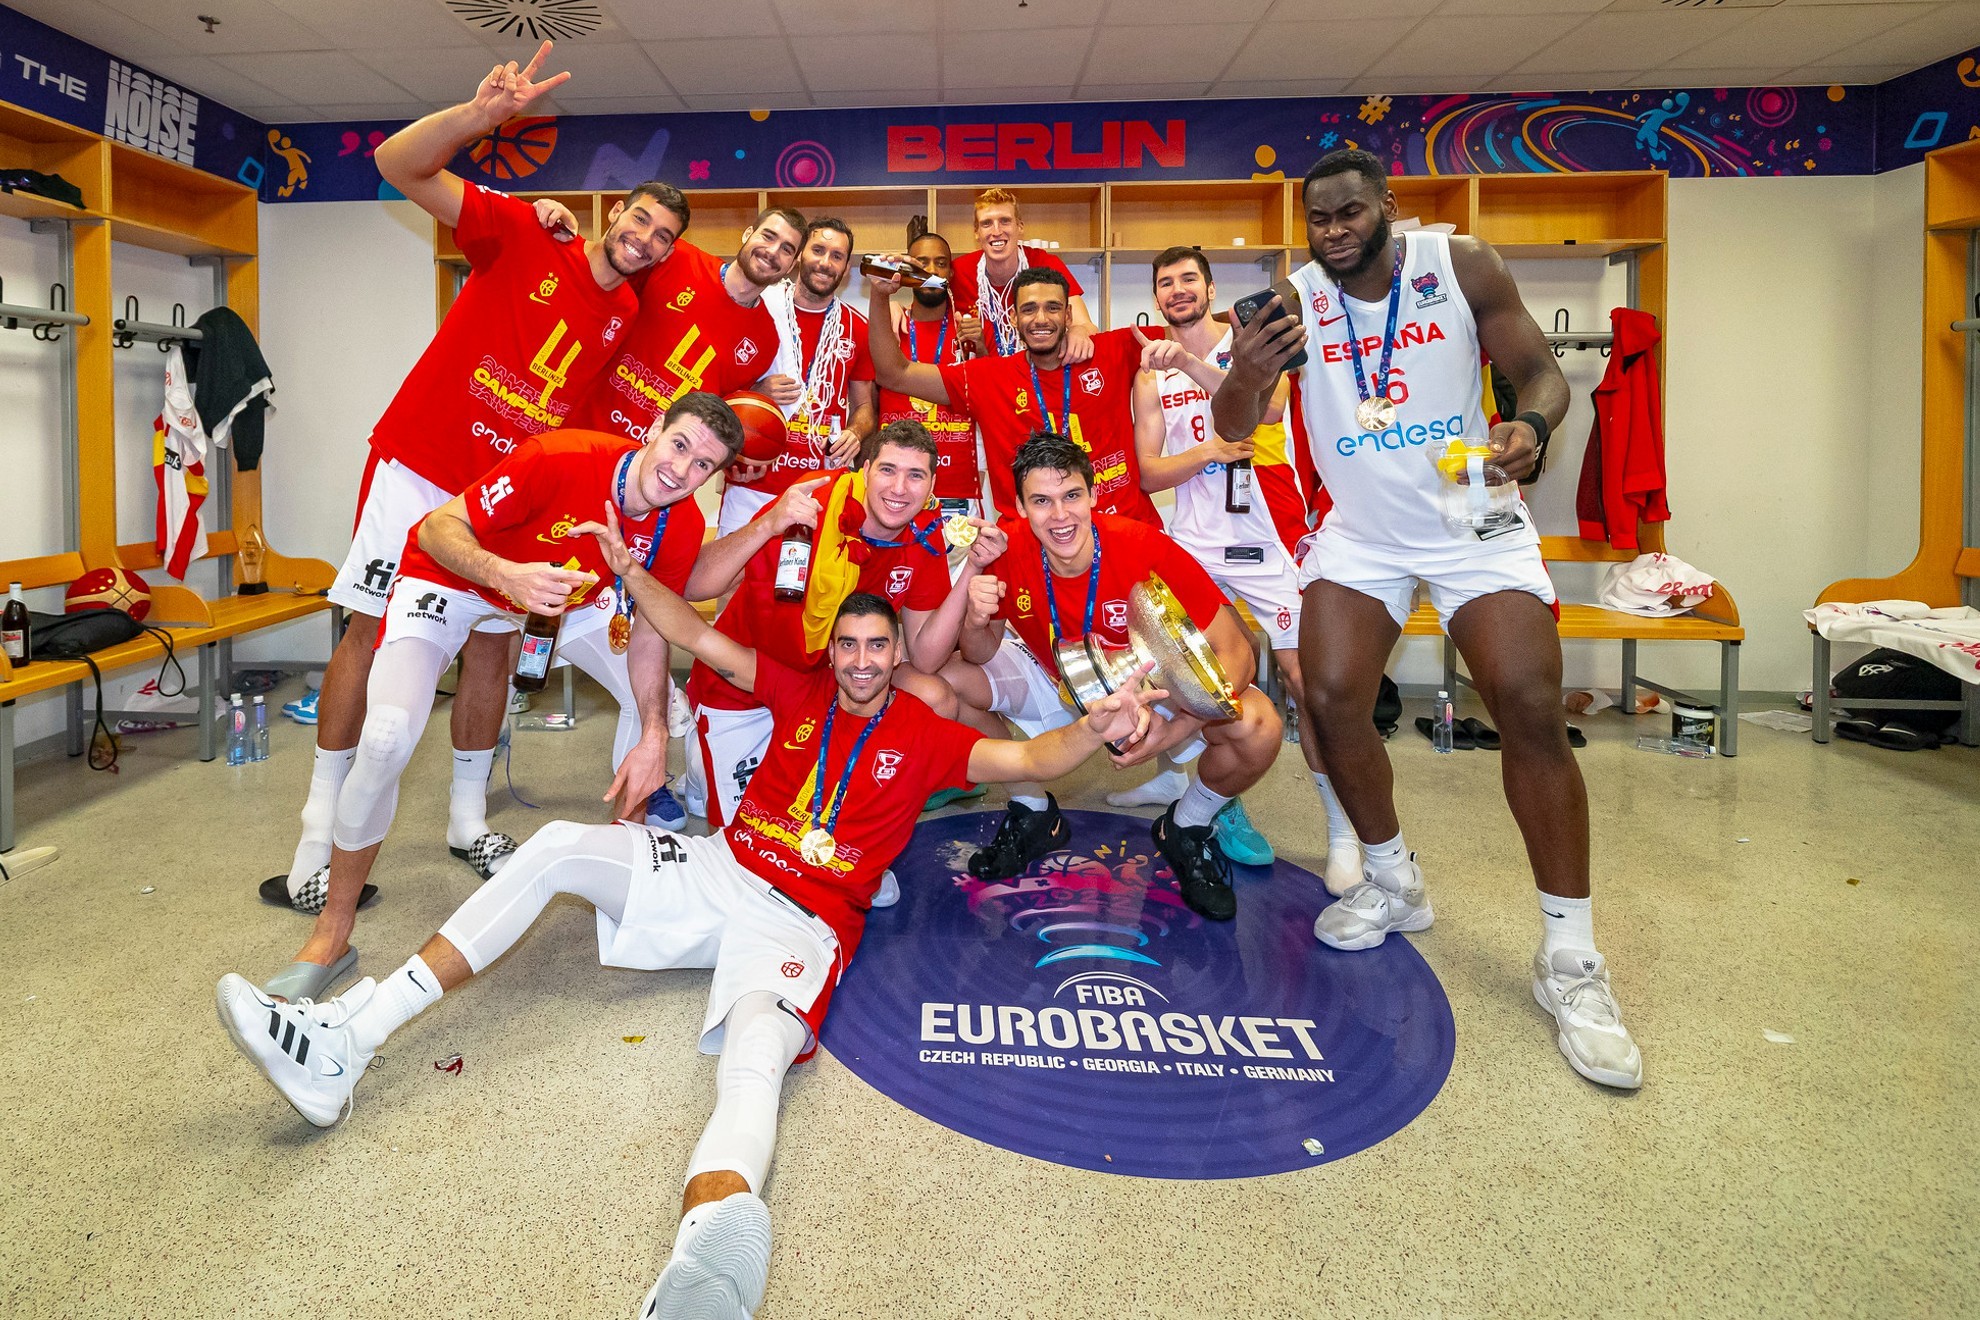 Los jugadores de la selección celebran la consecución del Eurobasket en el vestuario. ALBERTO NEVADO/FEB